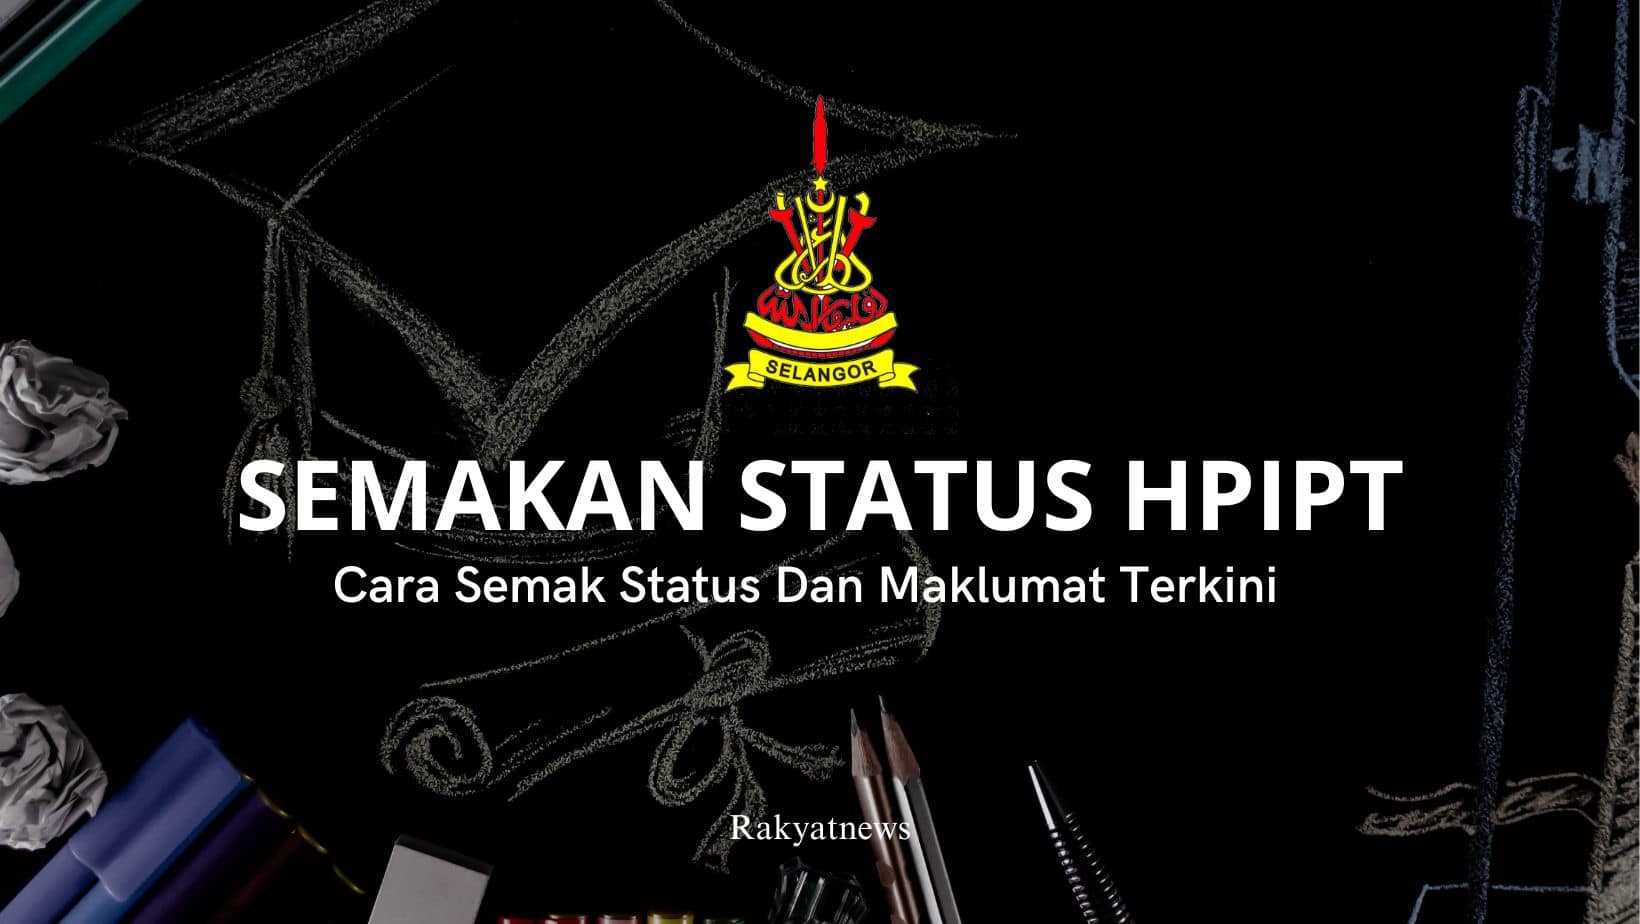 Semakan Status HPIPT